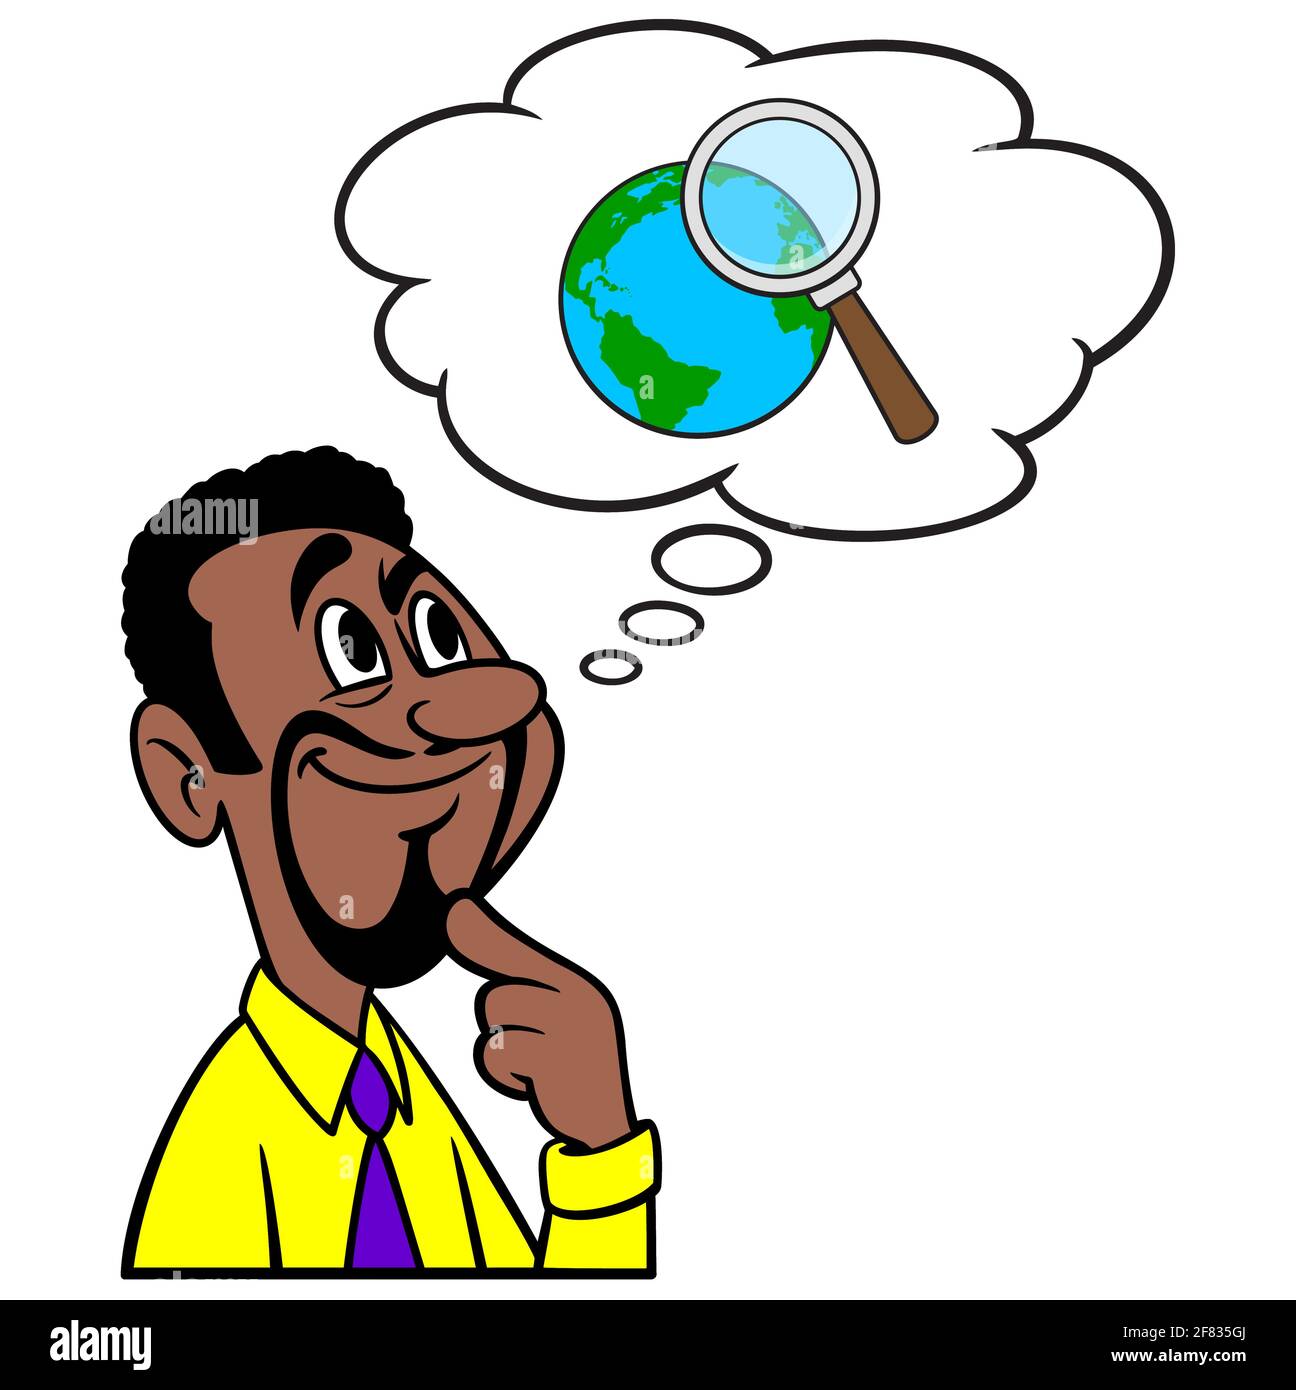 Homme pensant à la recherche mondiale - UNE illustration de dessin animé d'un homme pensant aux données de recherche mondiale. Illustration de Vecteur